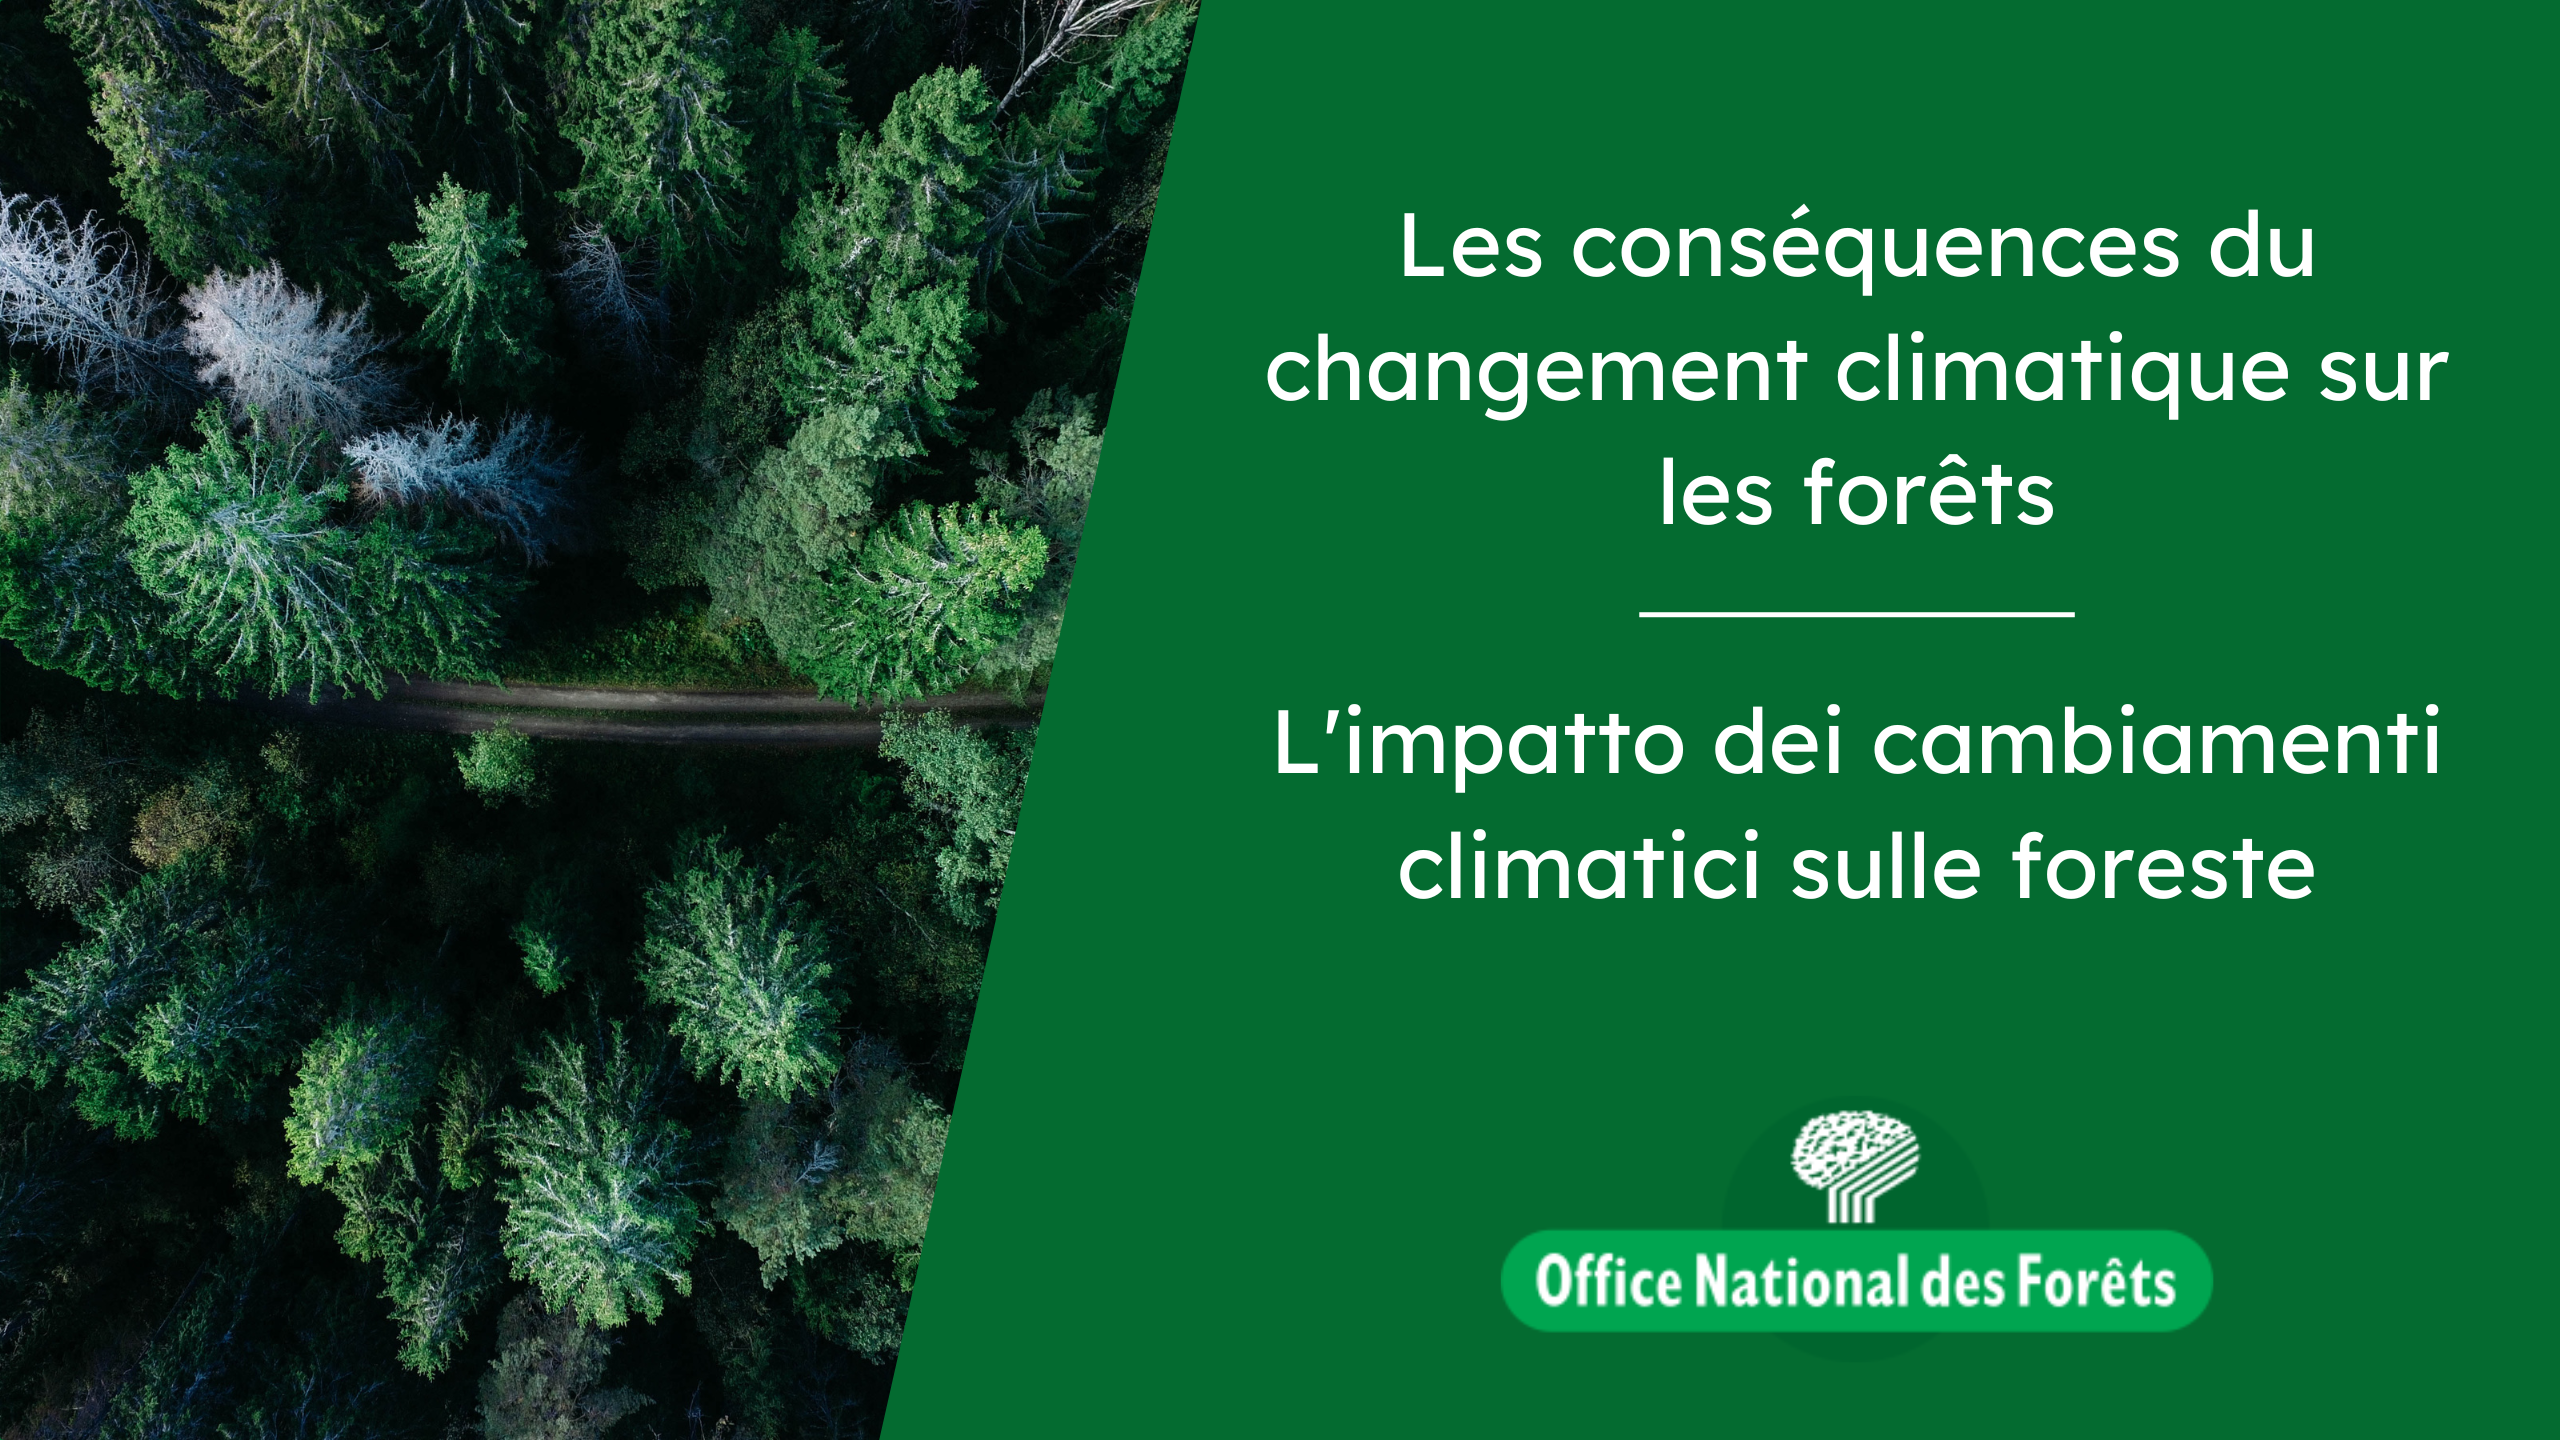 L’impatto dei cambiamenti climatici sulle foreste